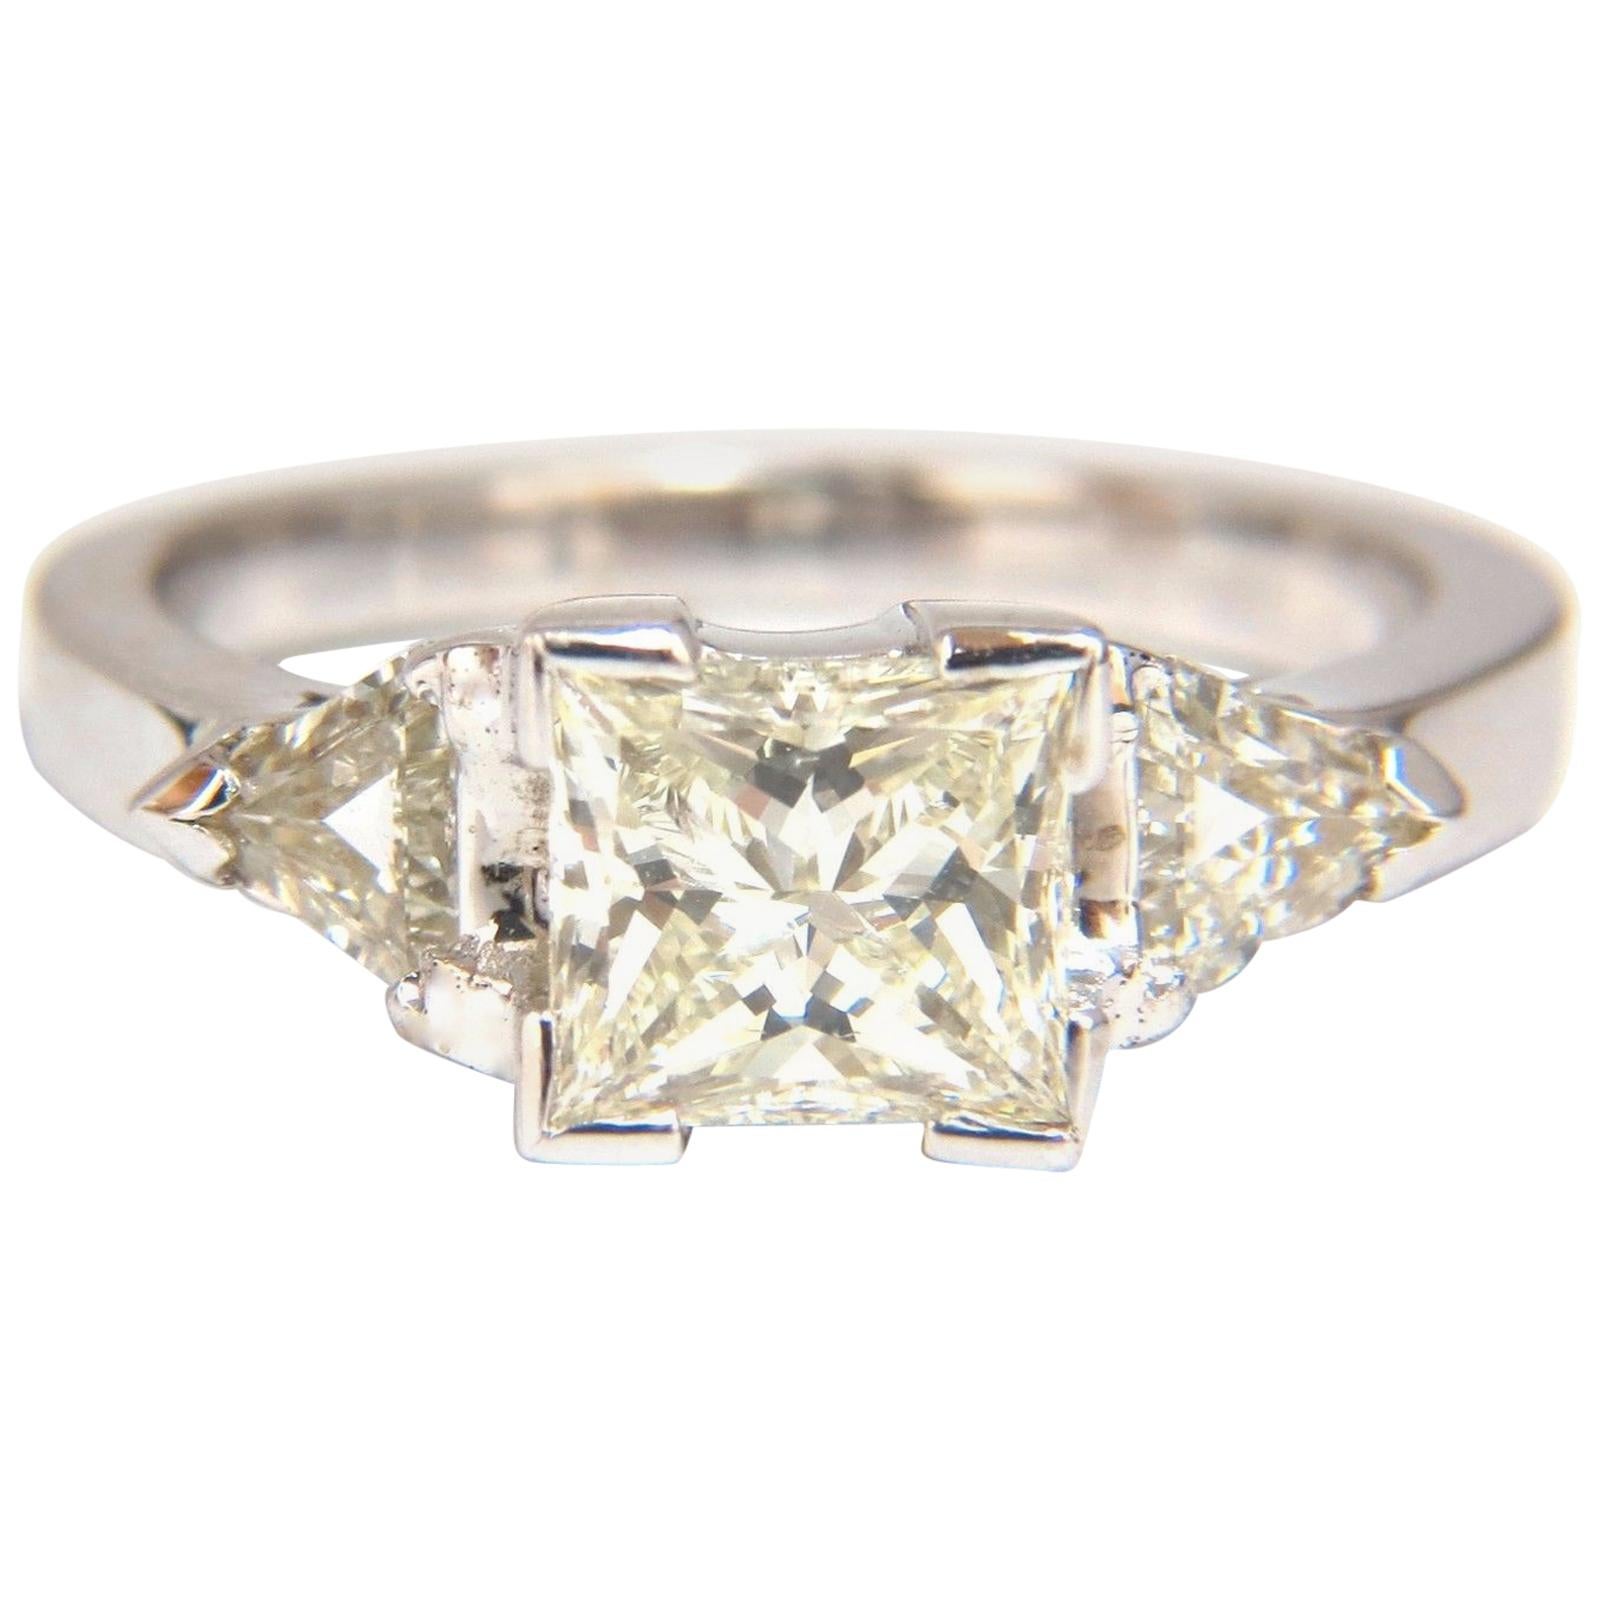 1.63 Carat Natural Princess Cut Diamond Ring 14 Karat Trilliants